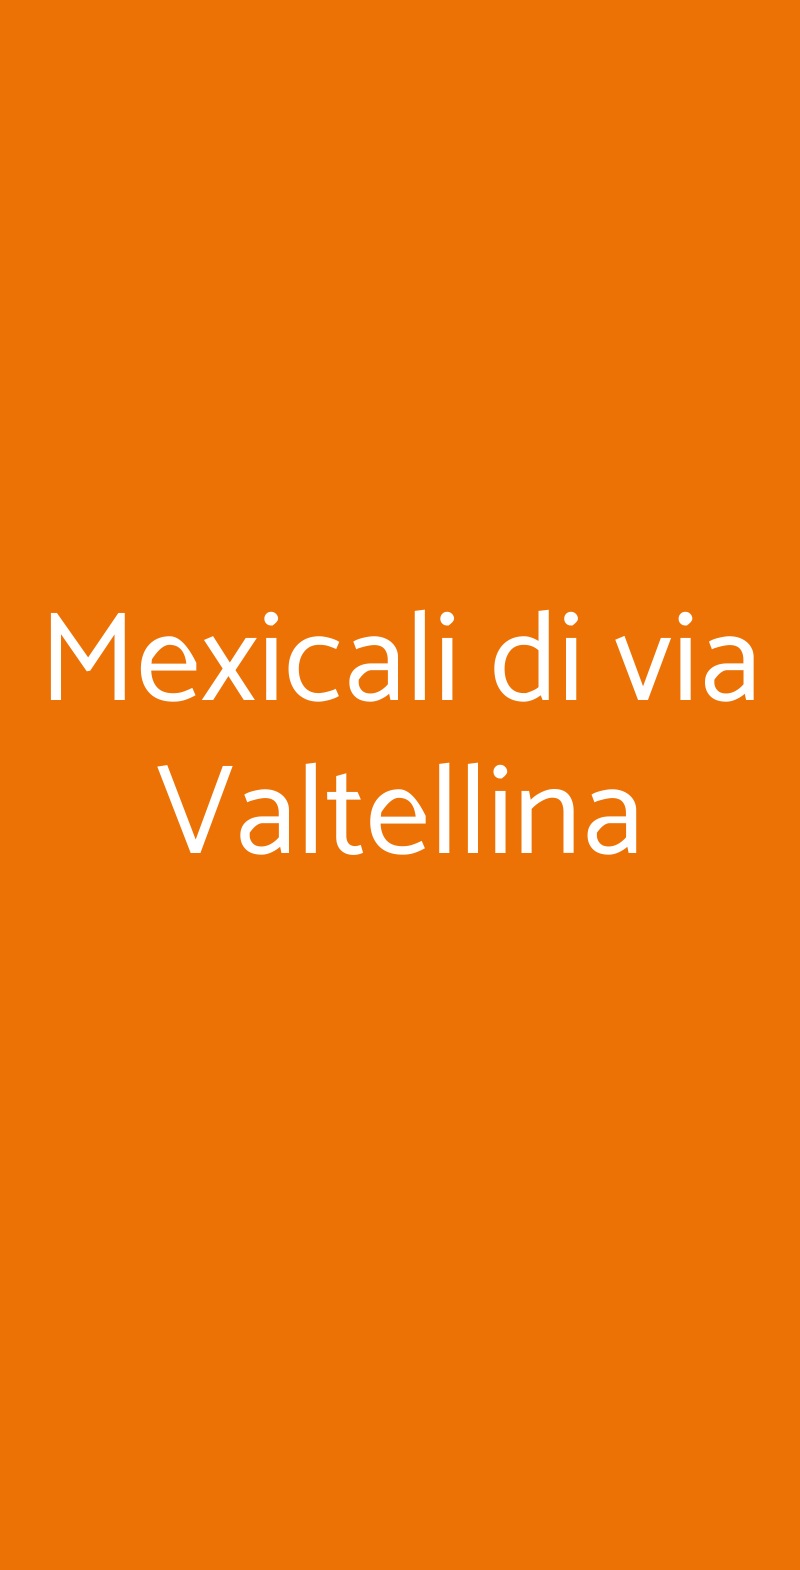 Ristorante Mexicali - Milano Valtellina Milano menù 1 pagina